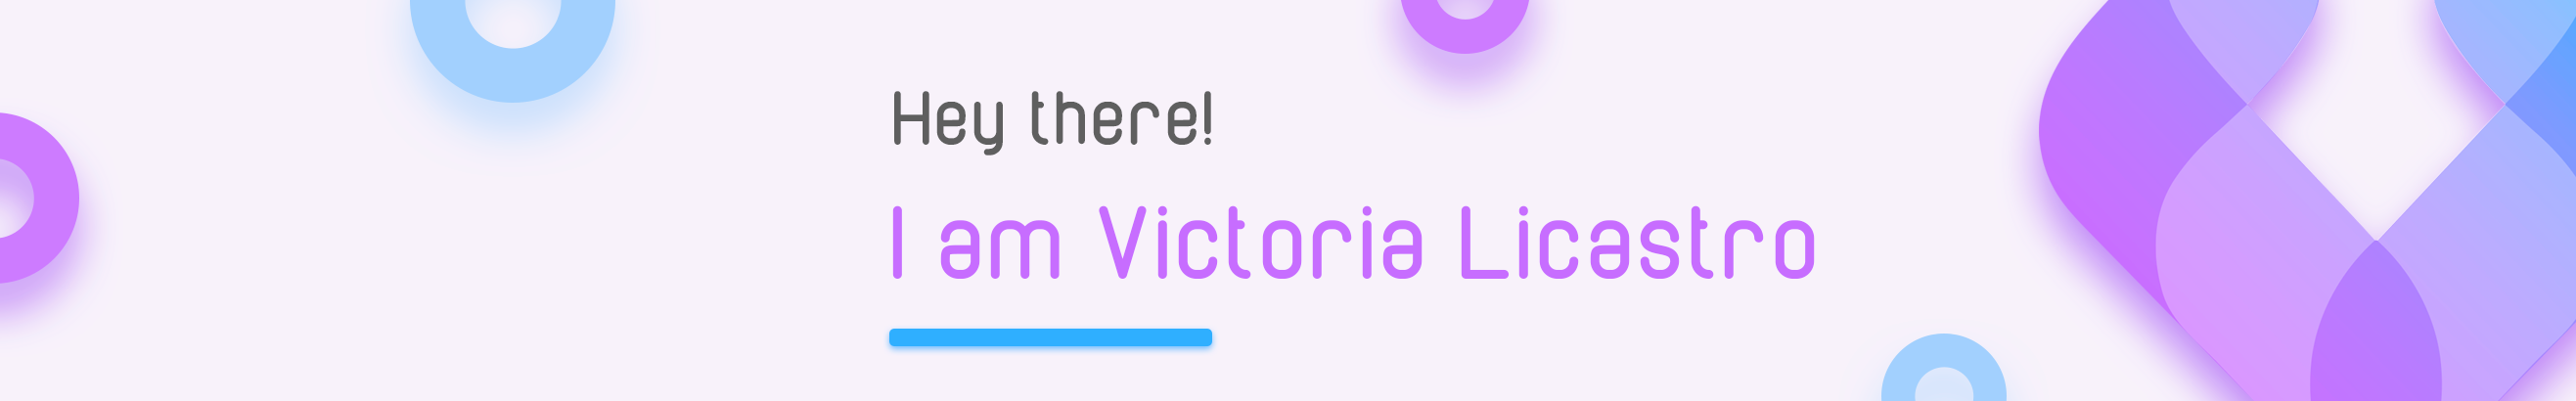 Victoria Licastro's profile banner